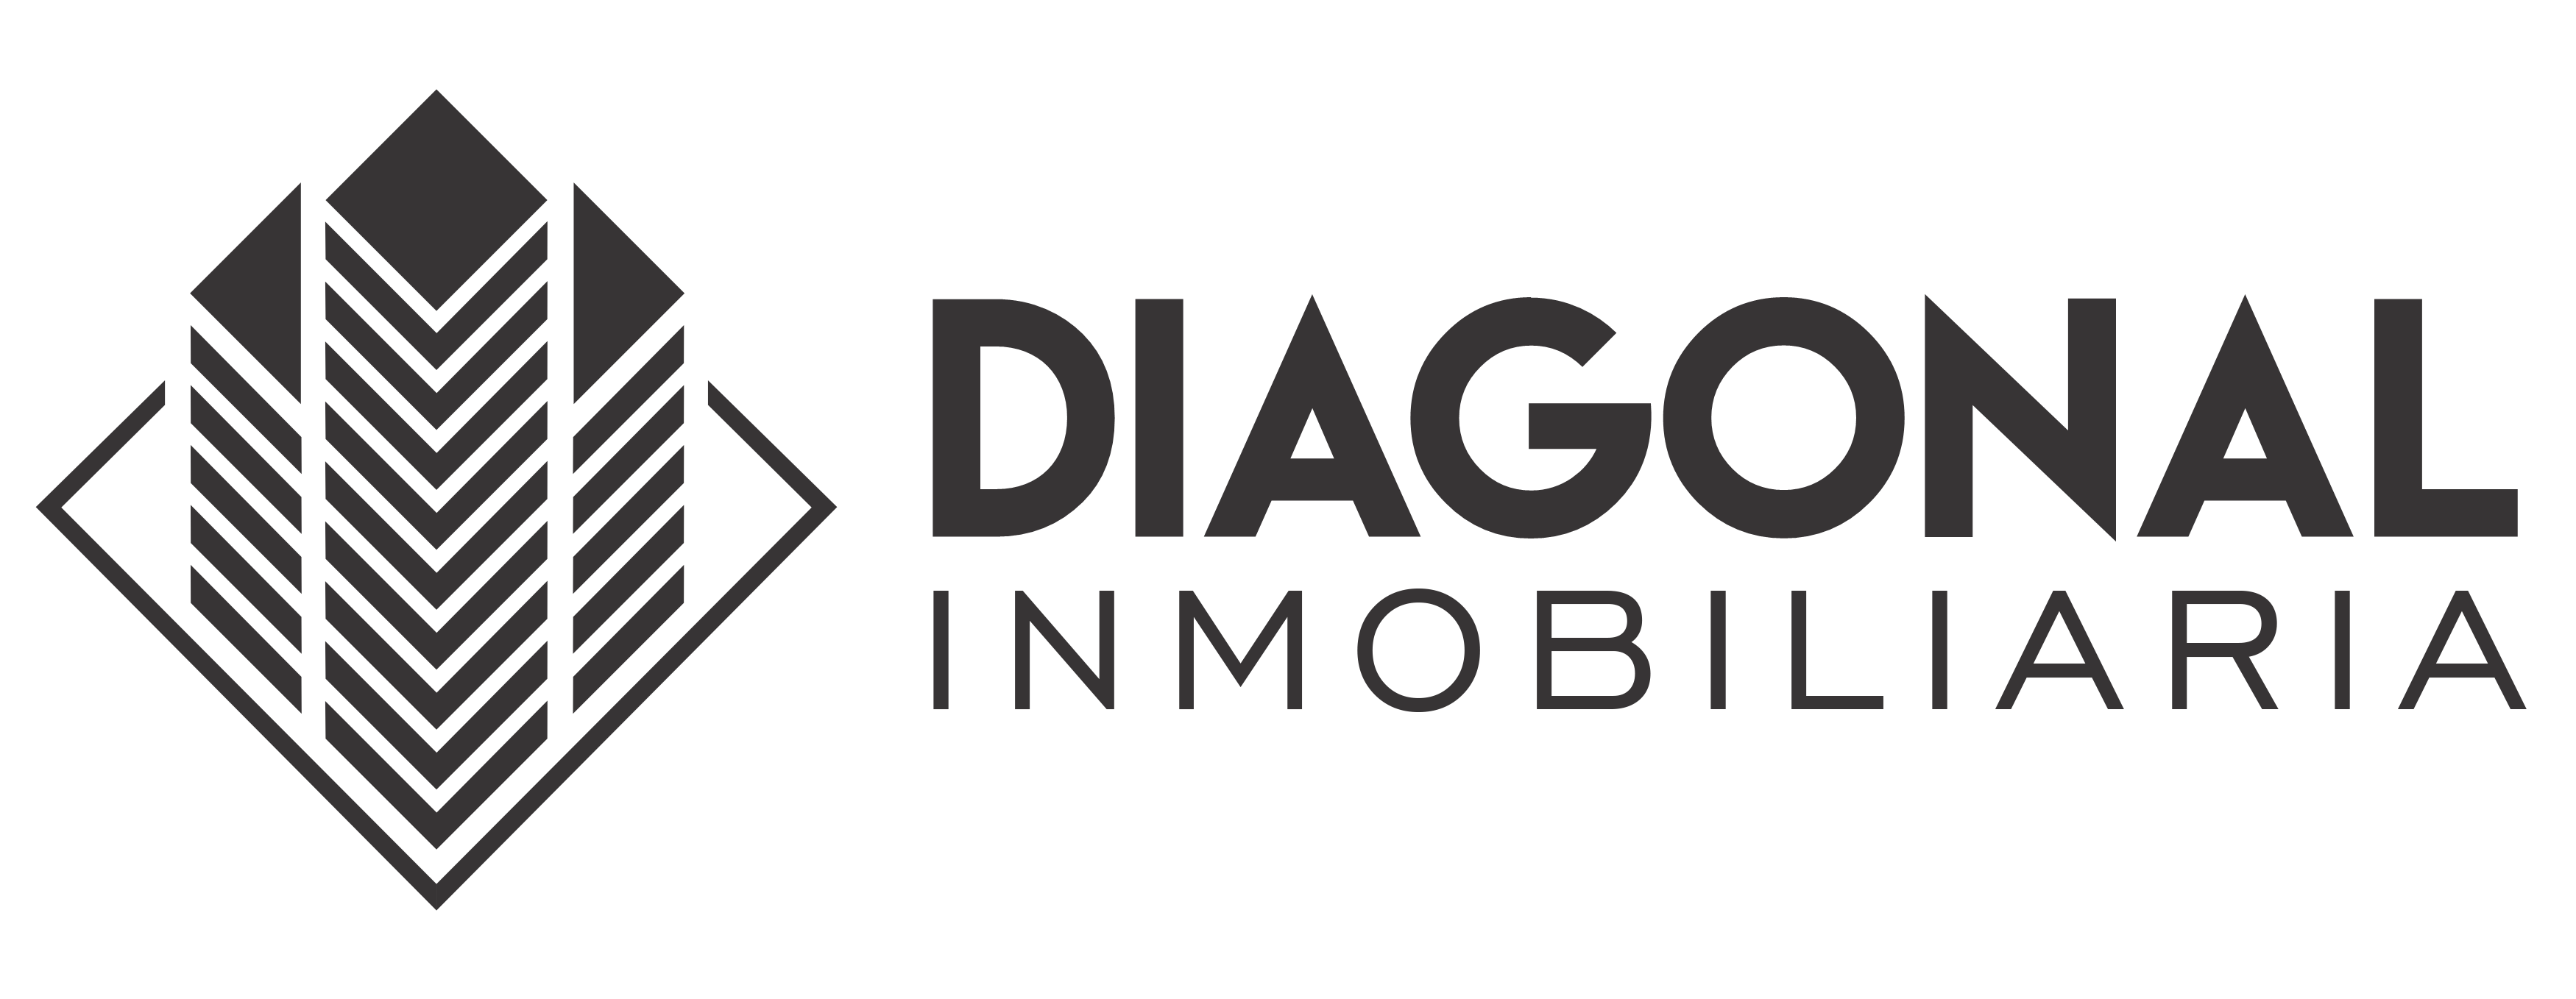 diagonal white logo